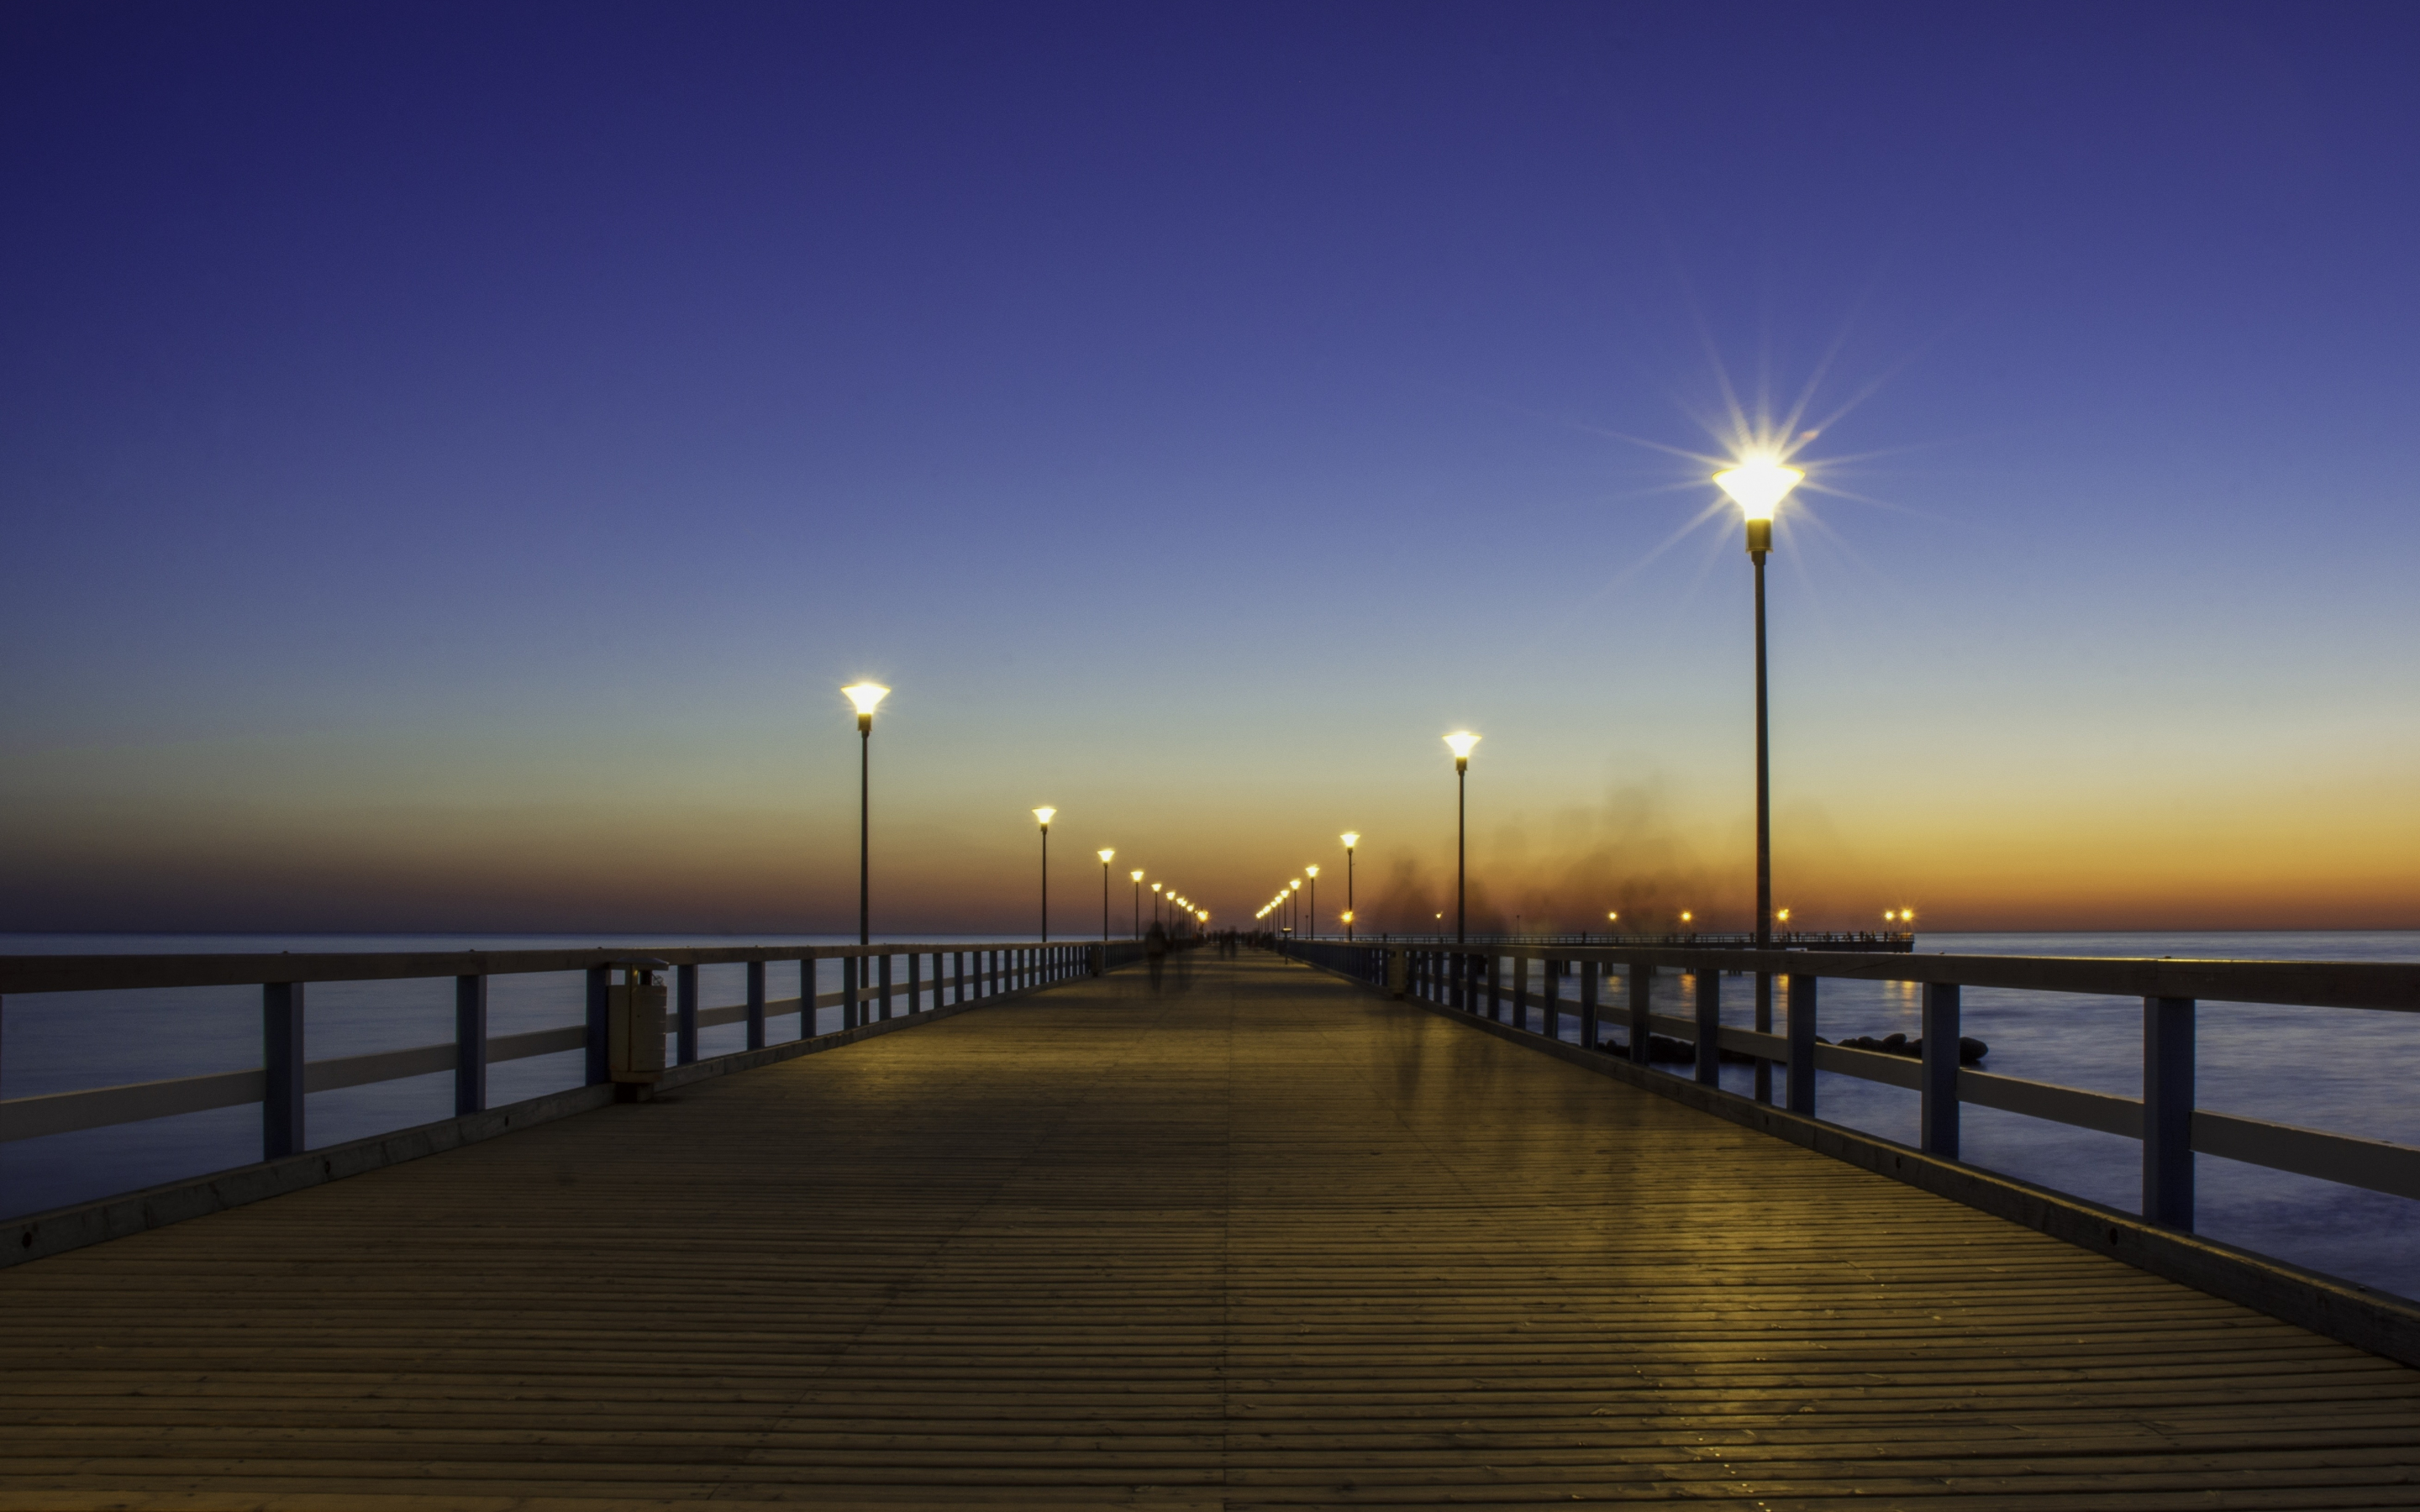 Bridge, pier, wooden, night out, sunset, 2880x1800 wallpaper